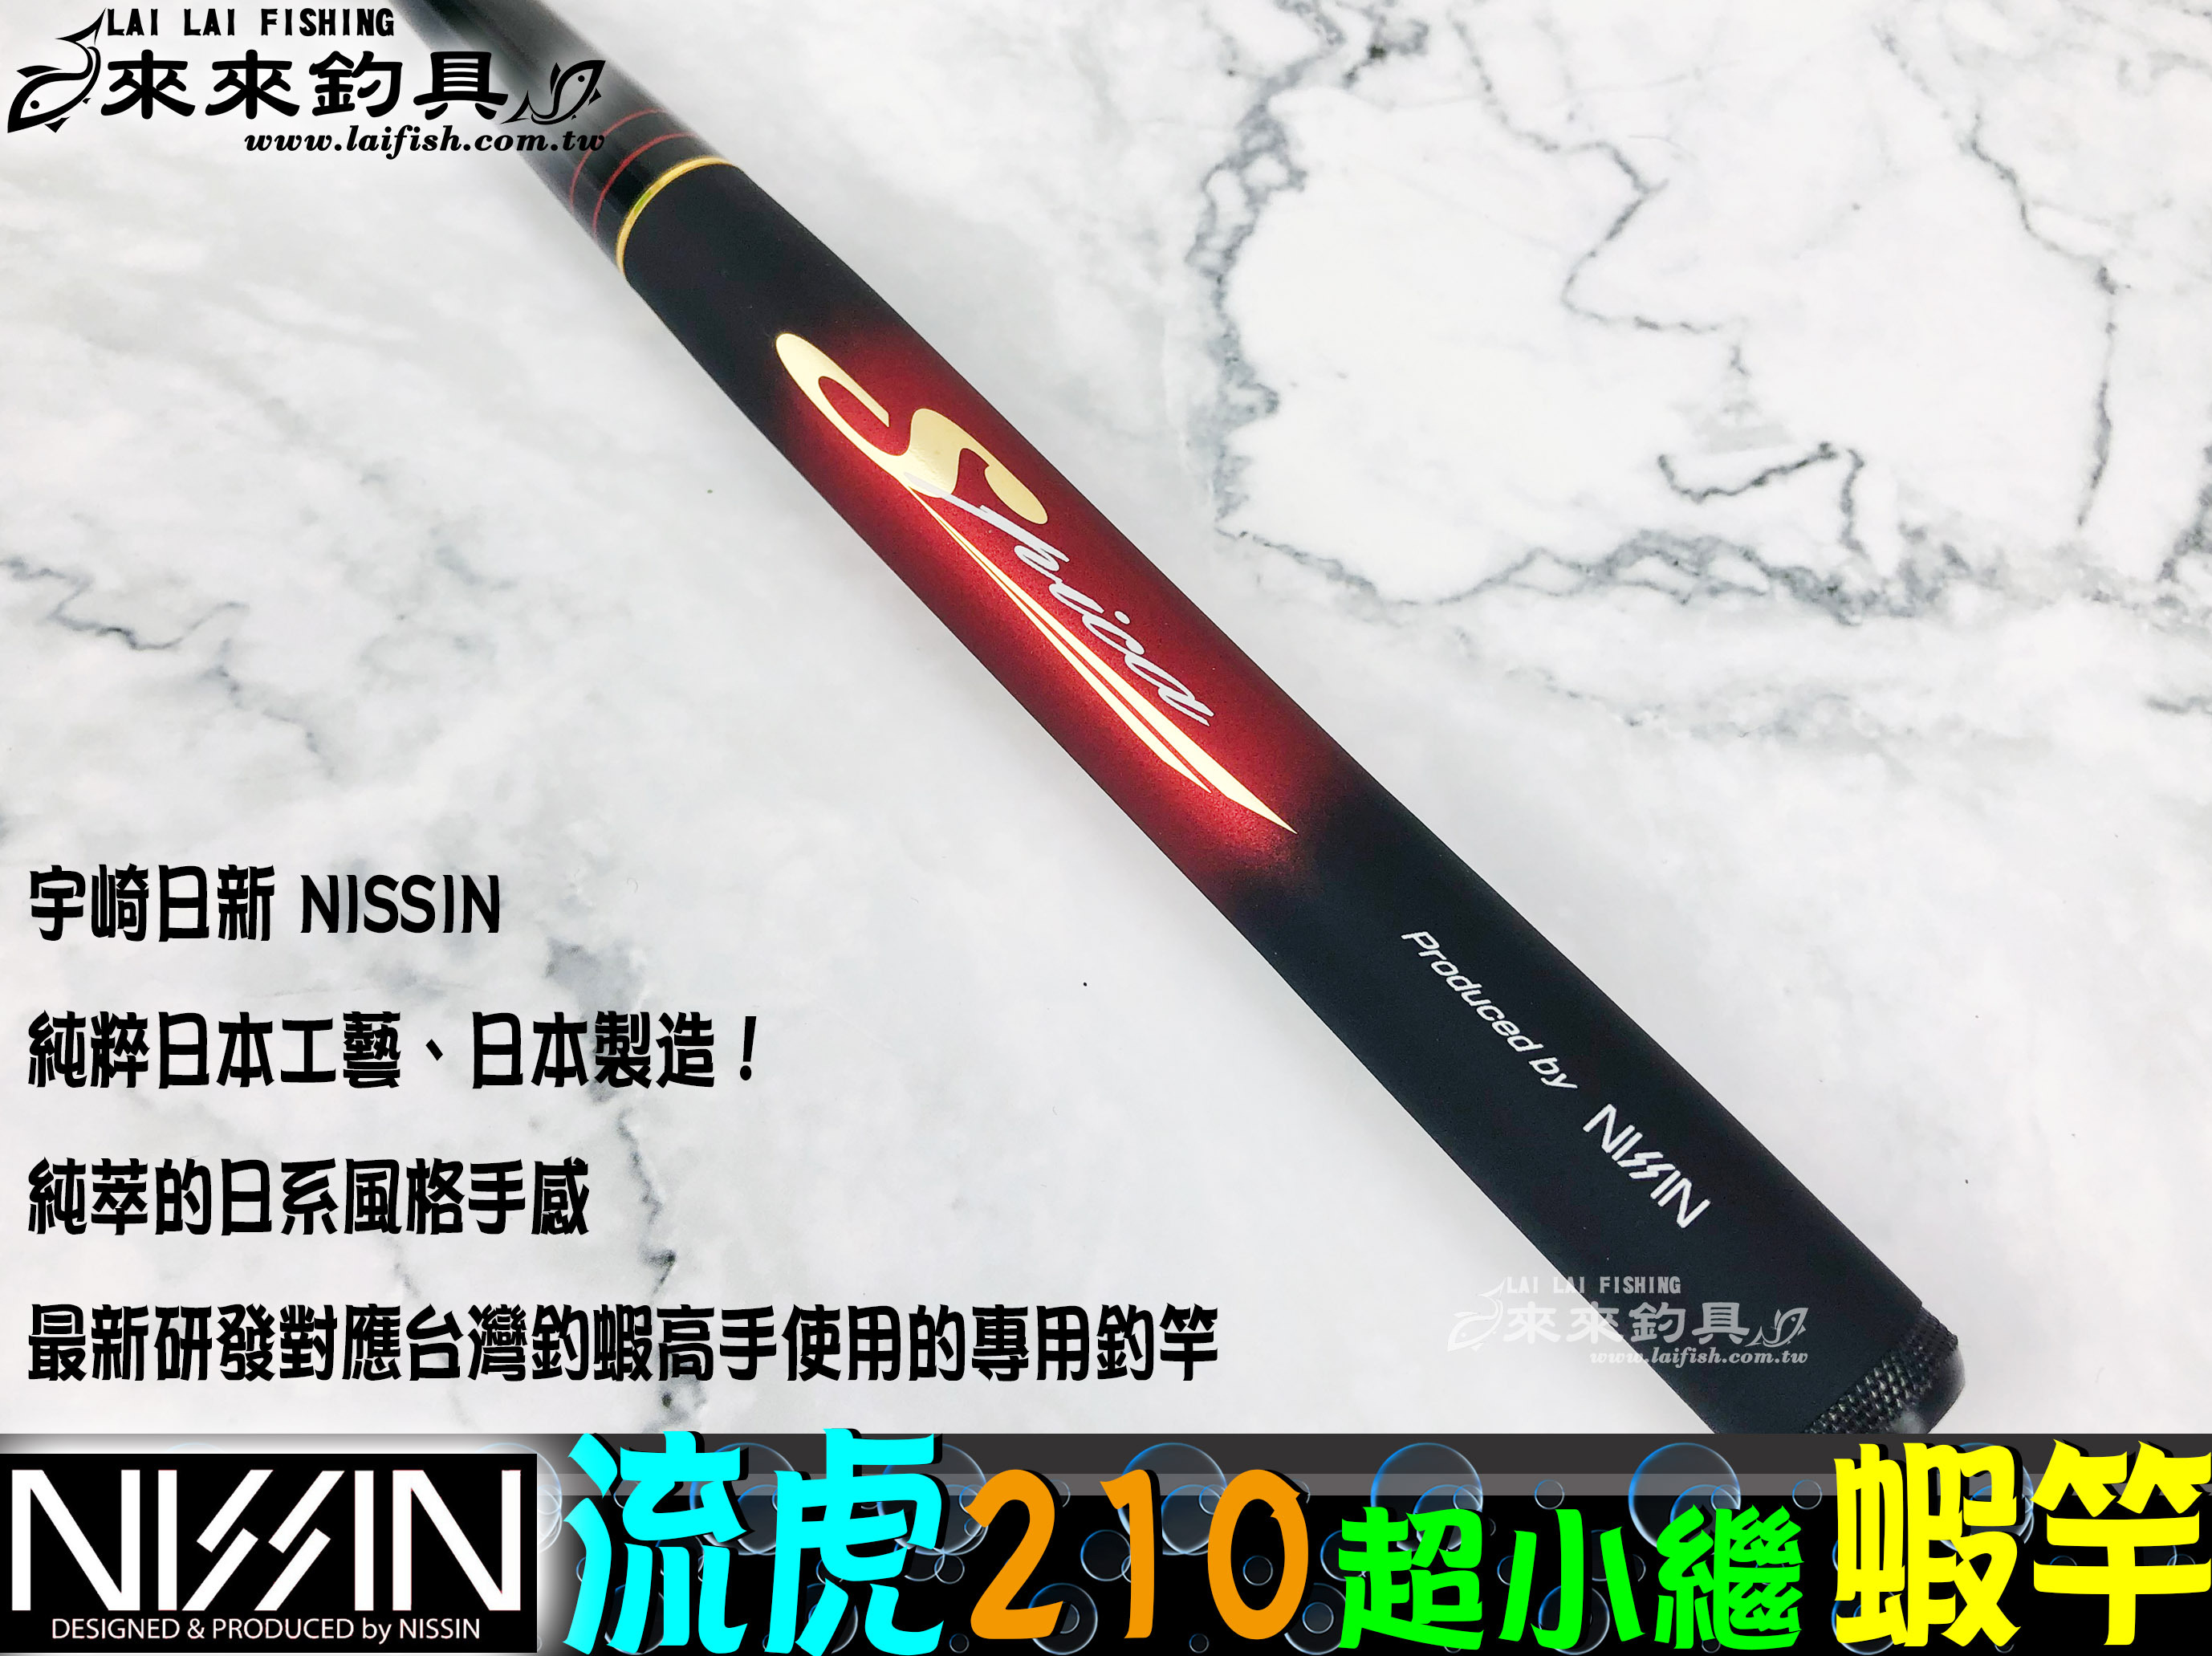 日本最級 宇崎日新 NISSIN 闘龍 とうりゅう 2.10m OT O01